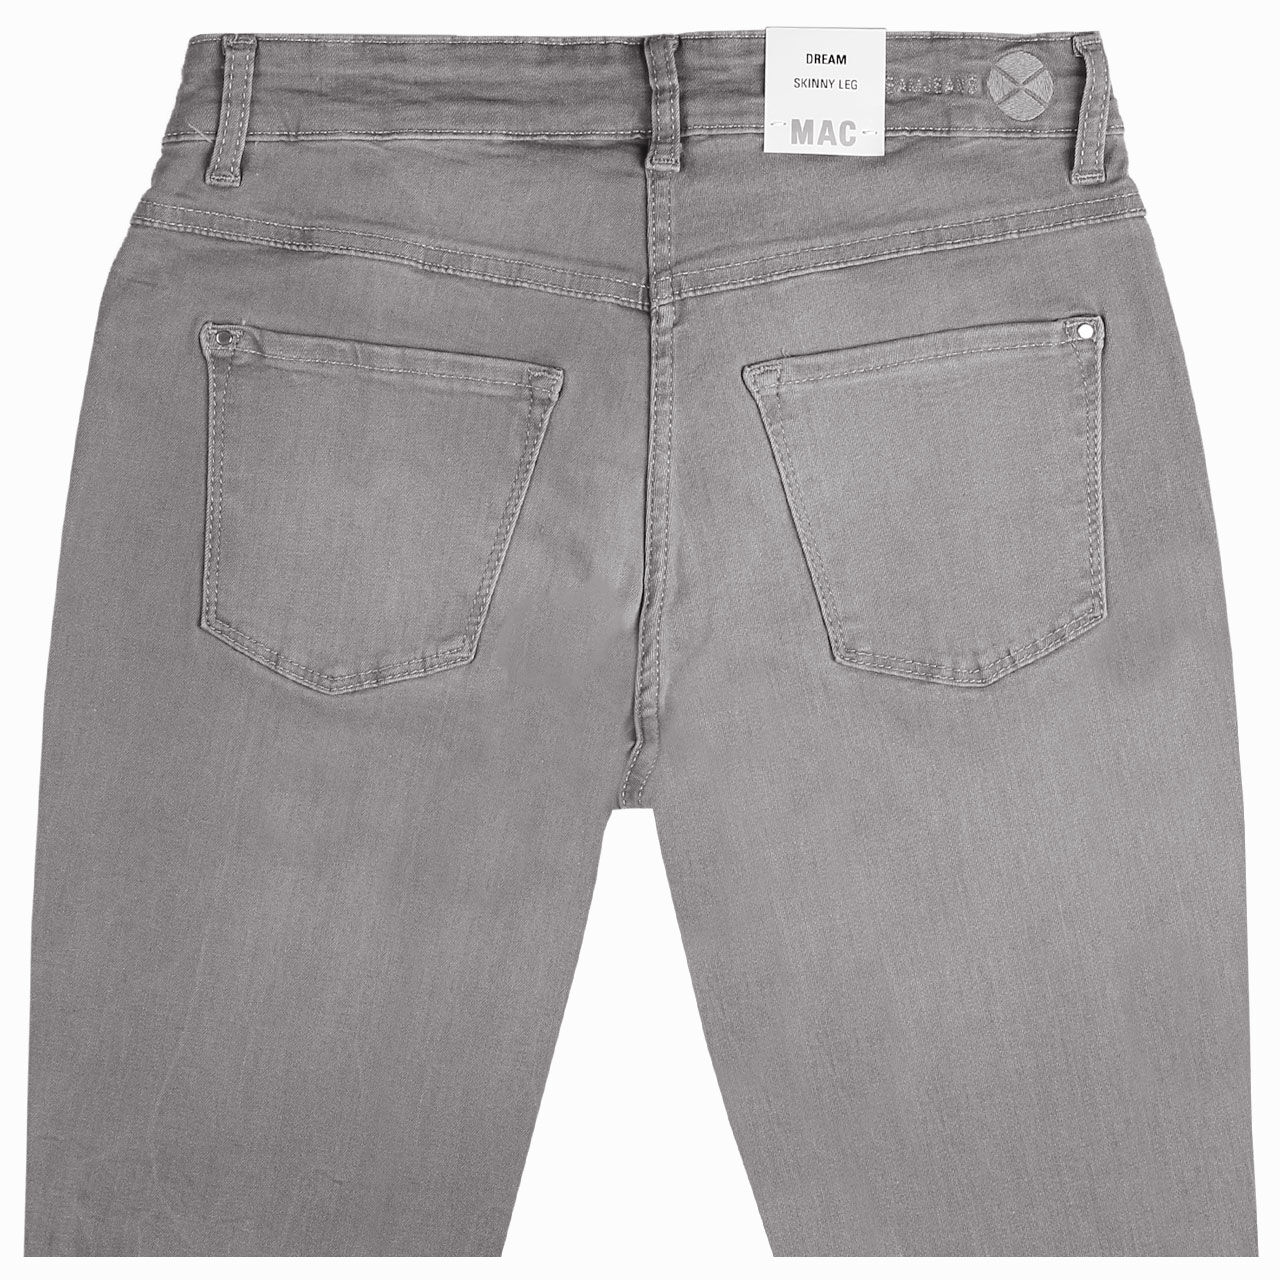 MAC Jeans Dream Skinny für Damen in Grau angewaschen, FarbNr.: D353